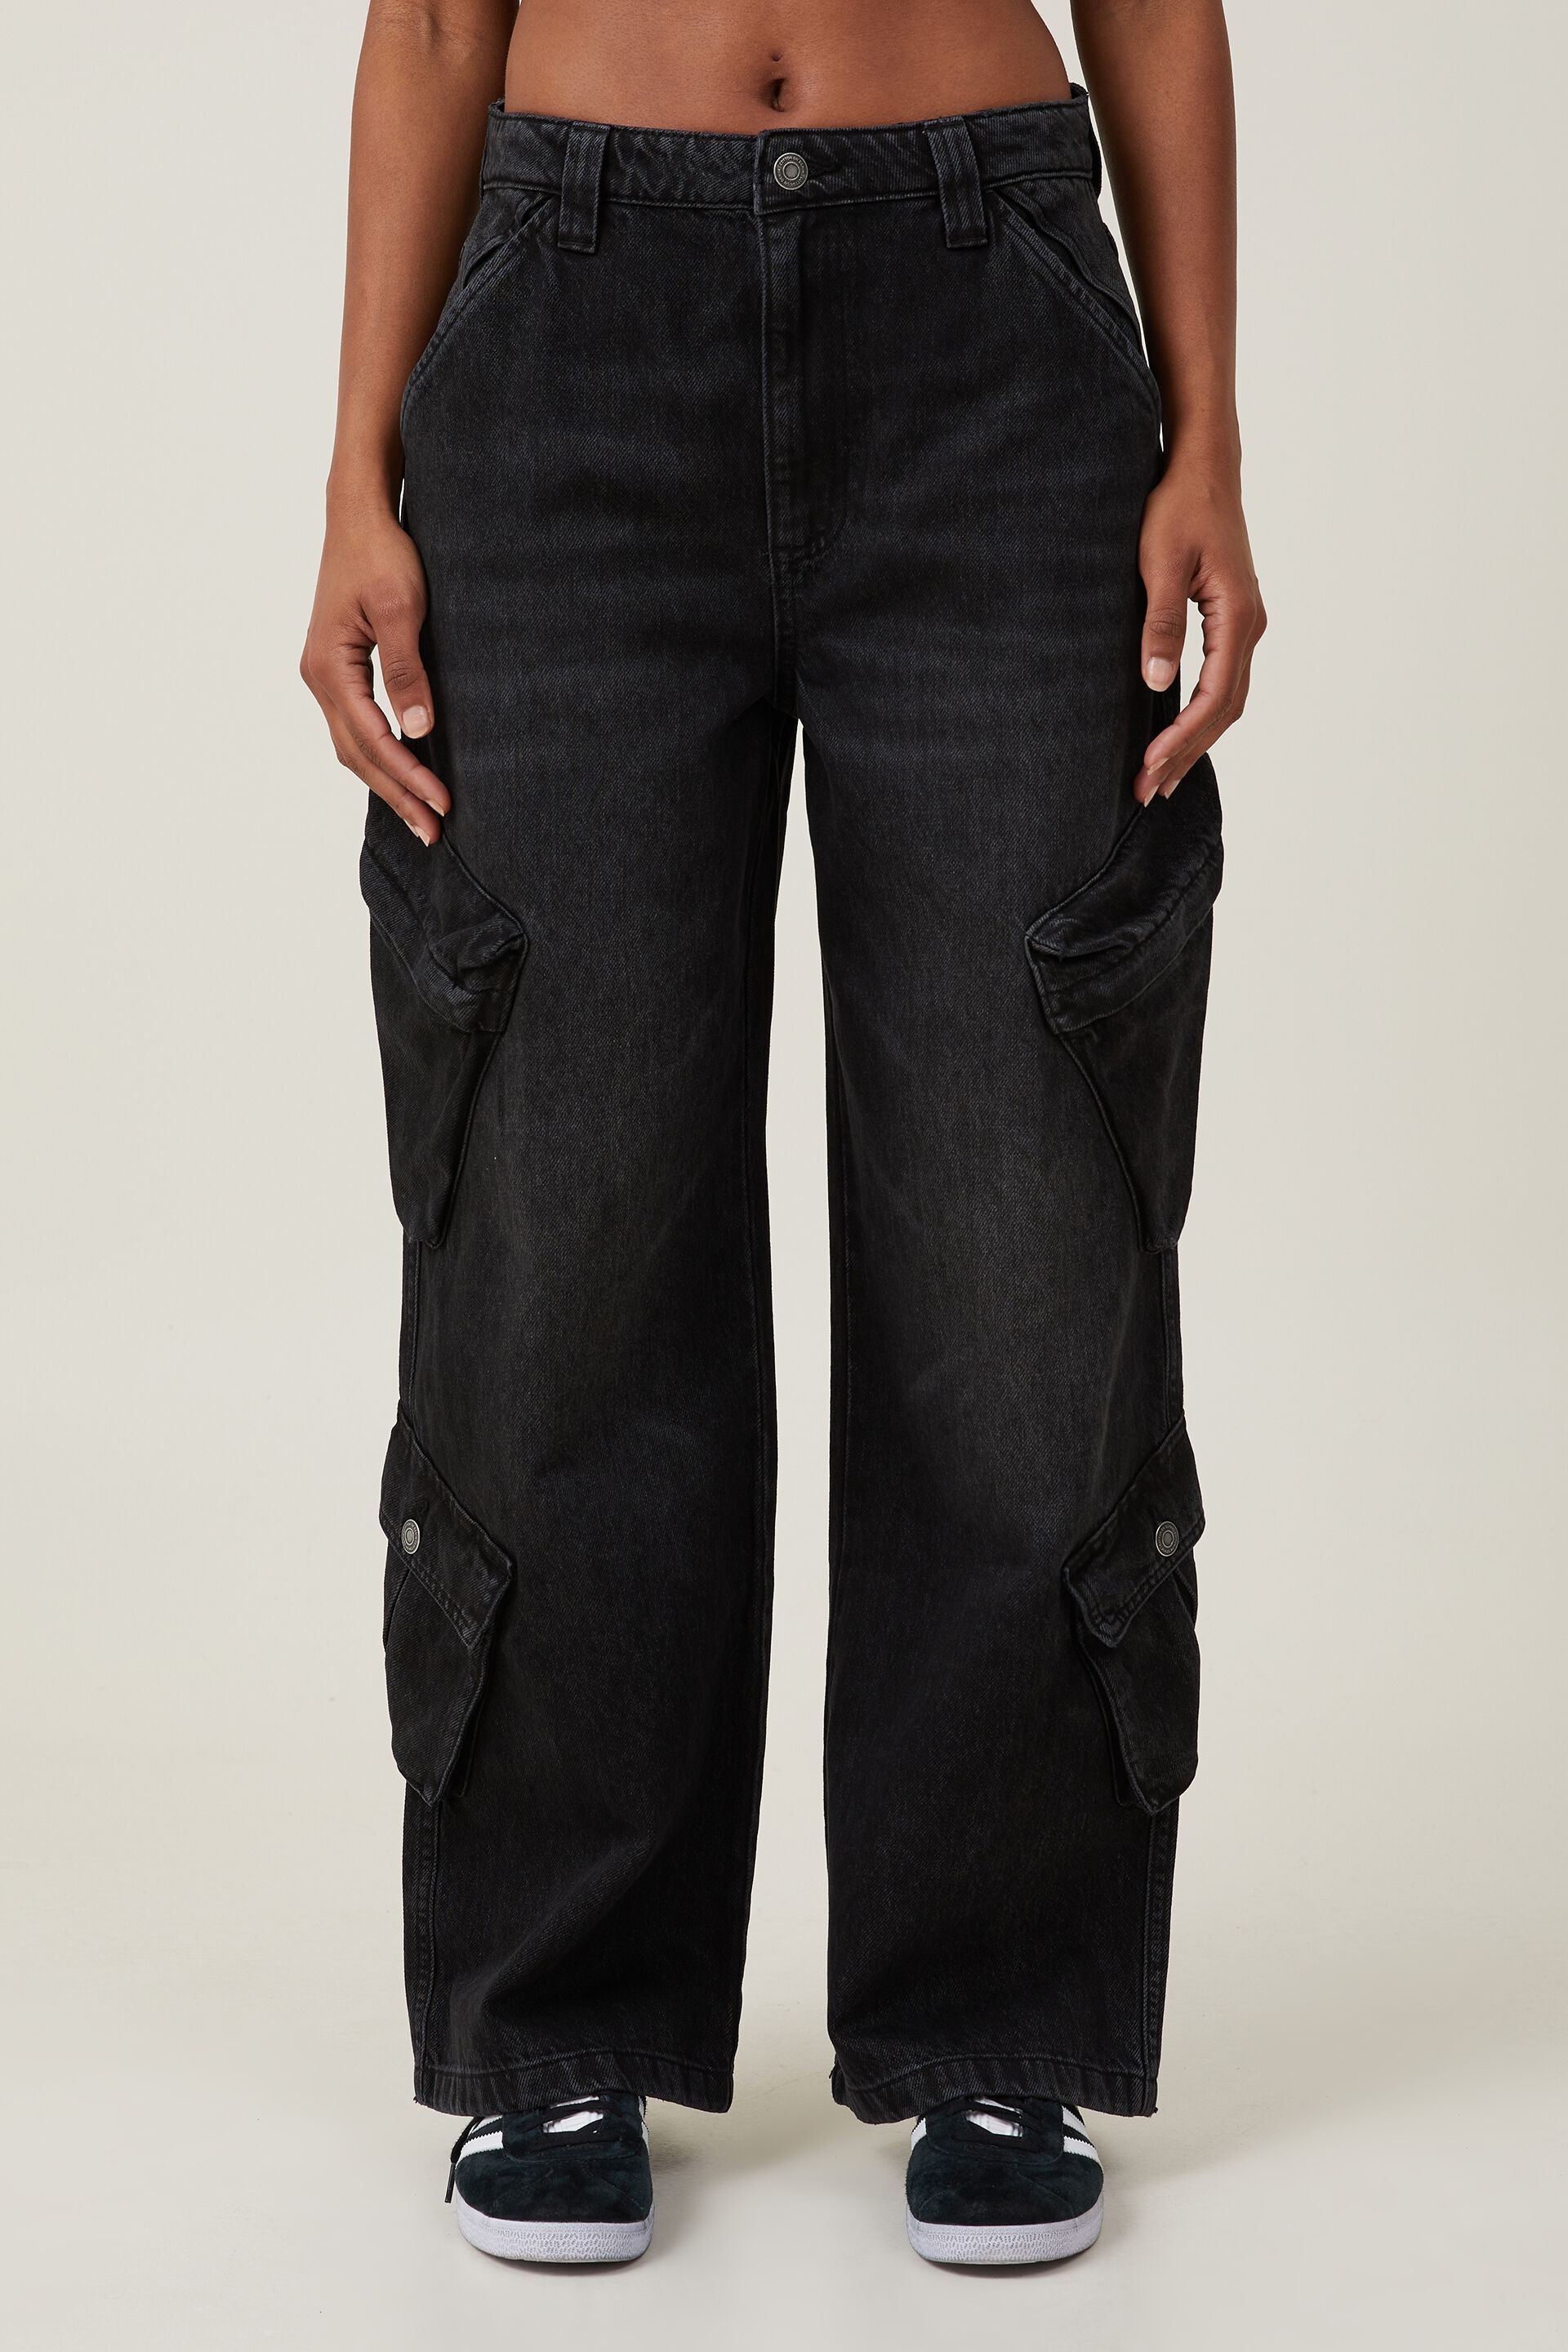 Stylish Cotton Lycra Men's Jeans (Pack Of 3)